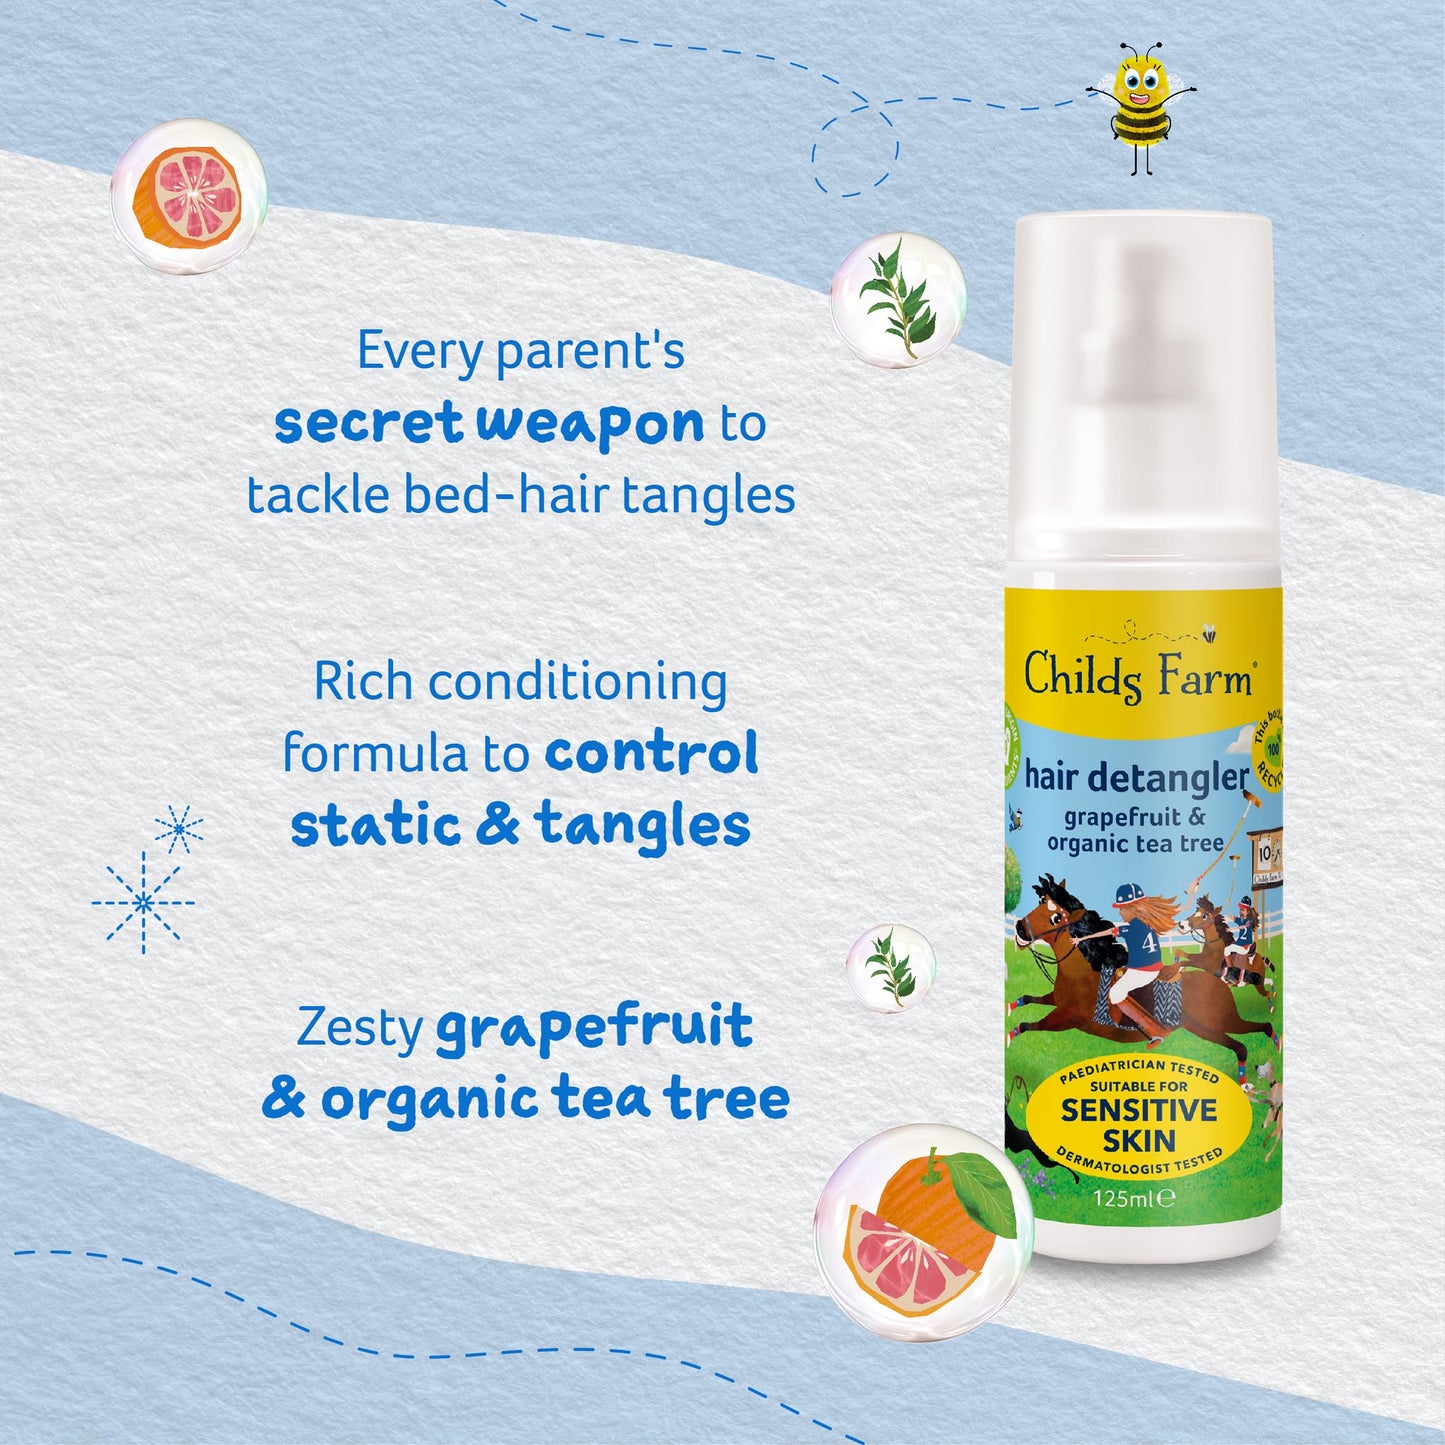 Childs Farm hair detangler grapefruit & organic tea tree